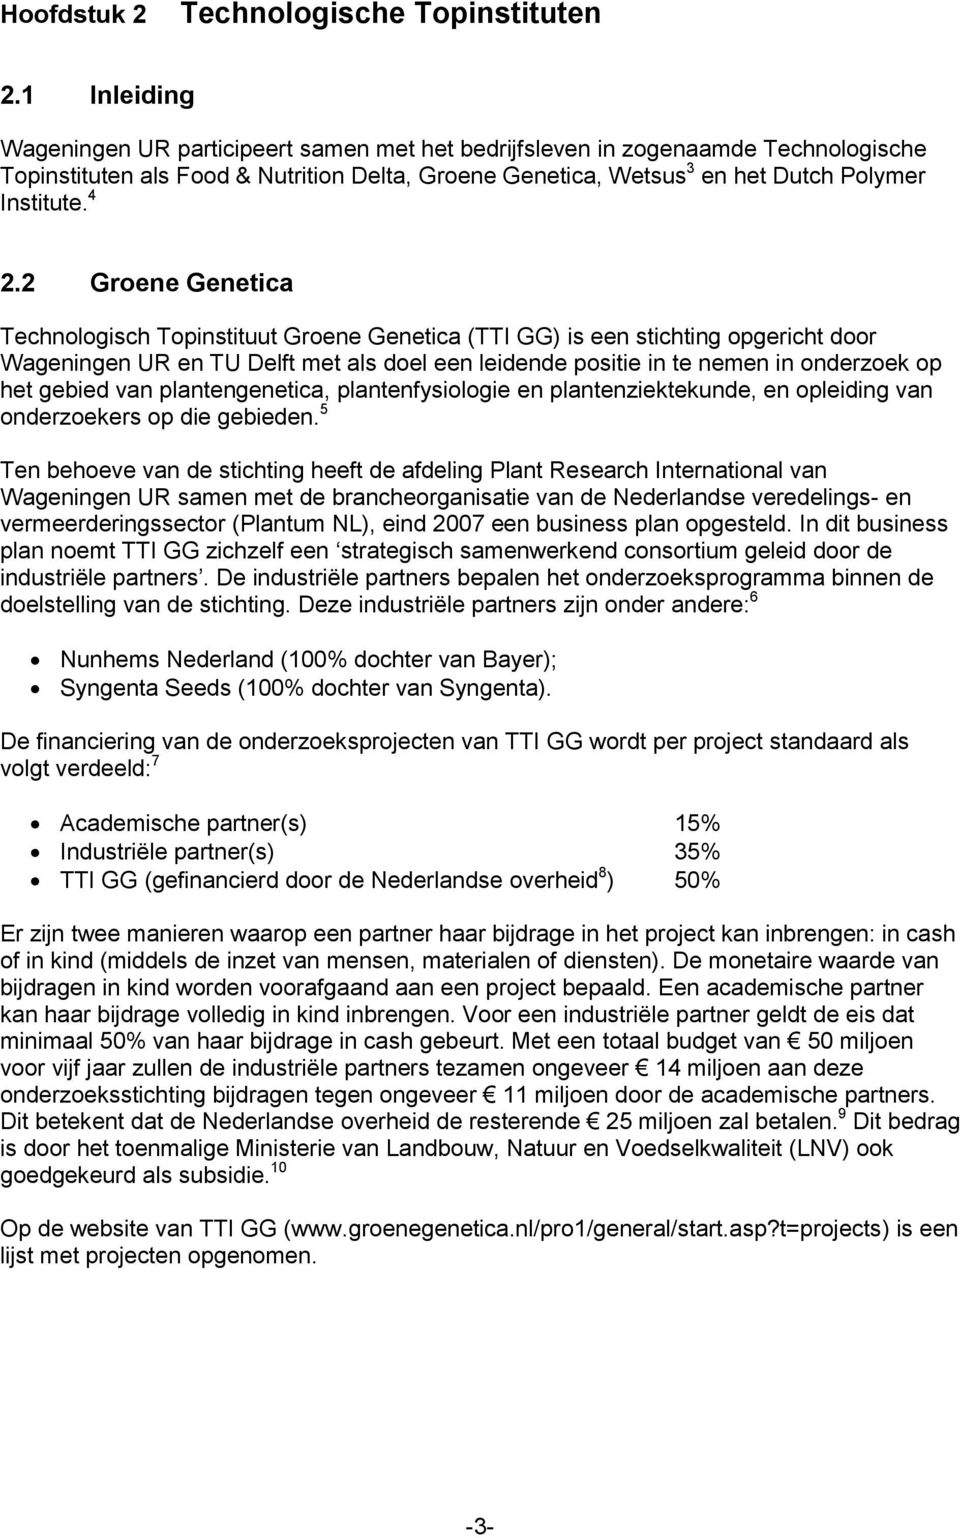 2 Groene Genetica Technologisch Topinstituut Groene Genetica (TTI GG) is een stichting opgericht door Wageningen UR en TU Delft met als doel een leidende positie in te nemen in onderzoek op het